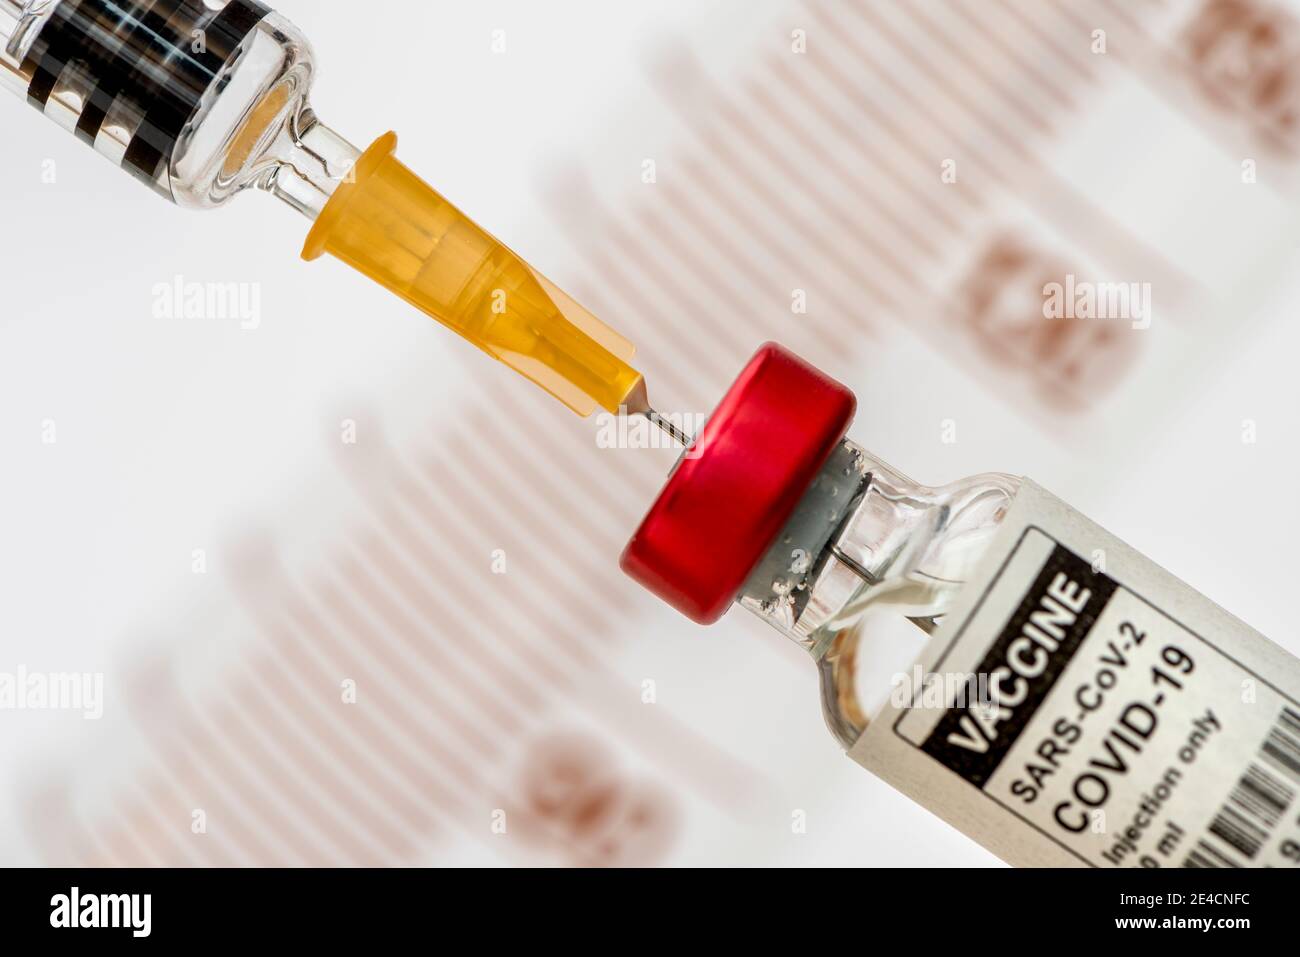 Vaccination with serum against COVID-19 / Coronavirus Stock Photo